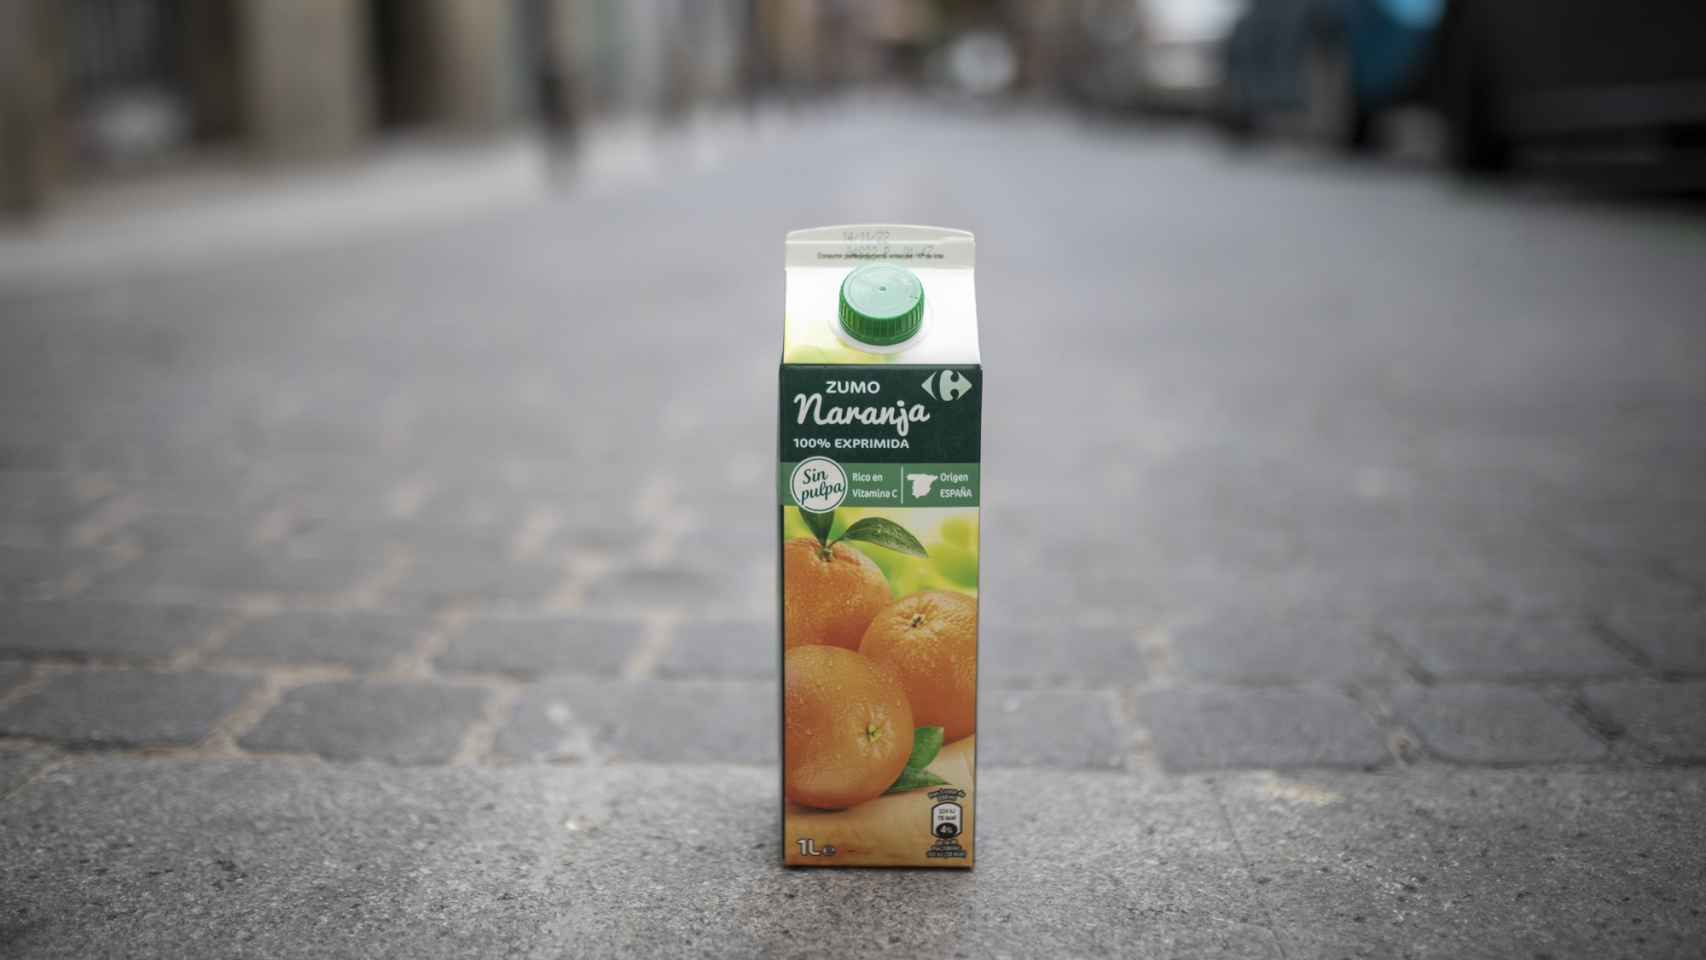 El 'brick' de zumo de naranja 100% exprimido y sin pulpa de Carrefour.